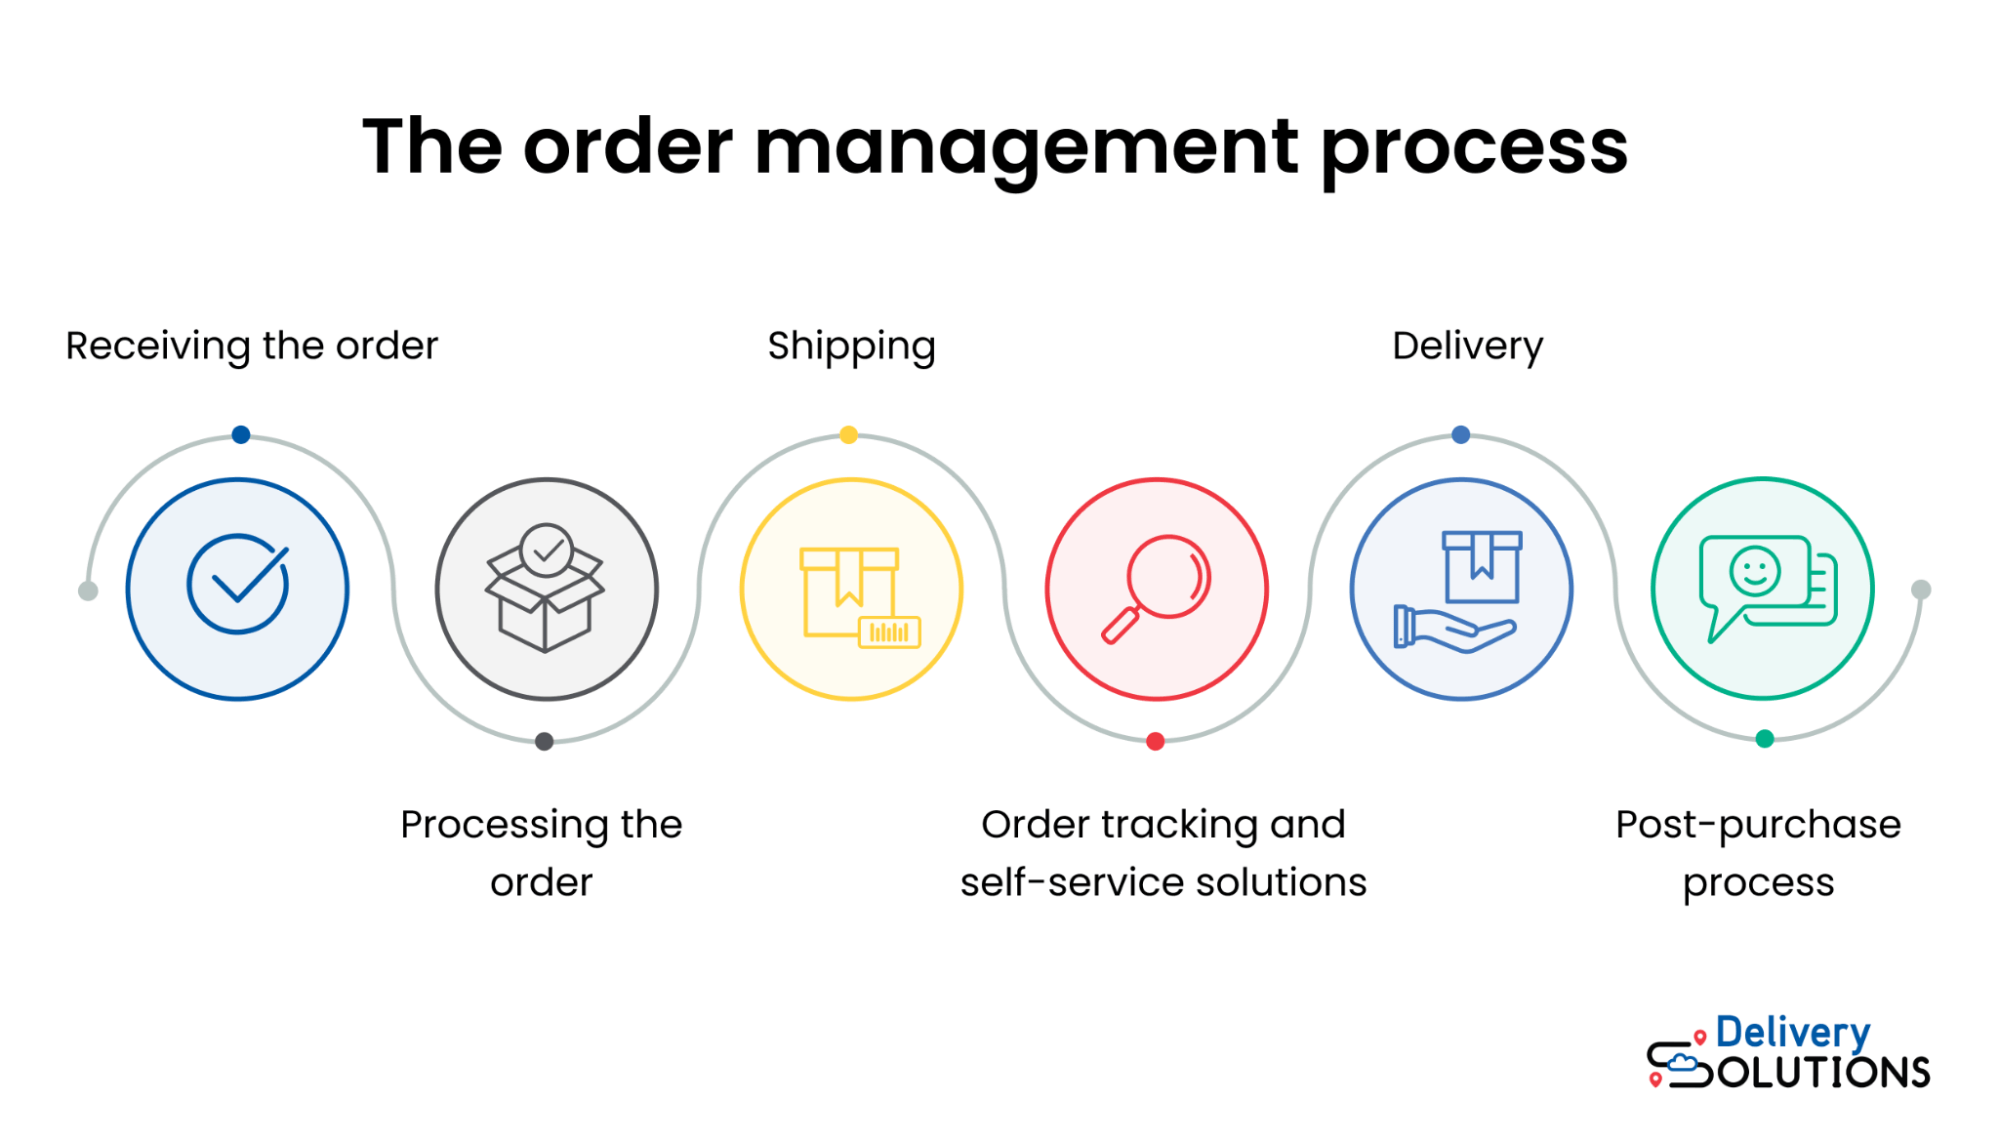 Order management process steps